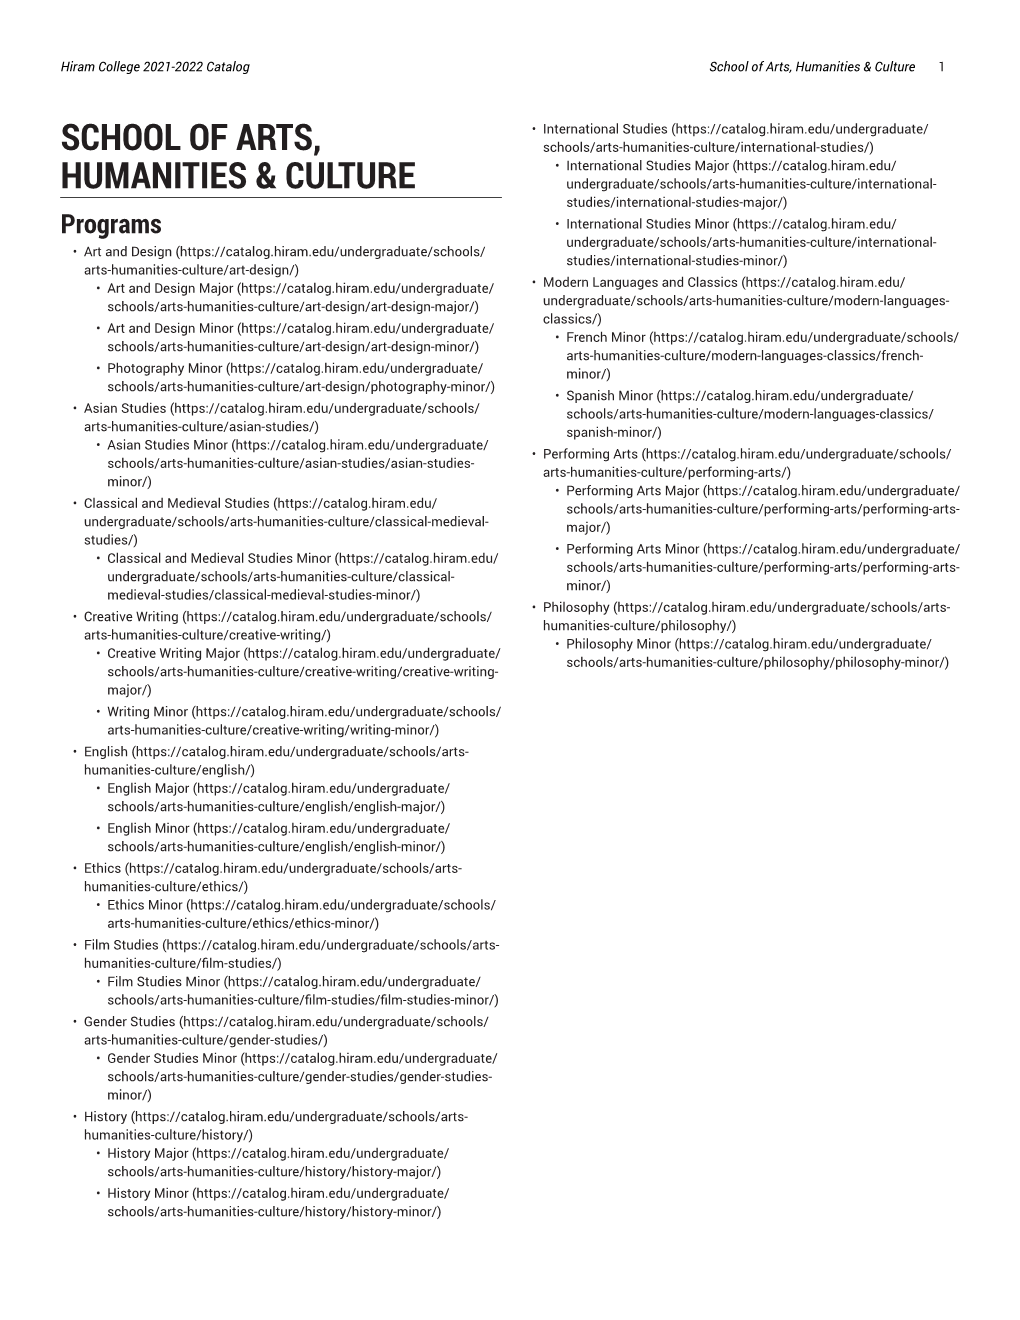 School of Arts, Humanities & Culture